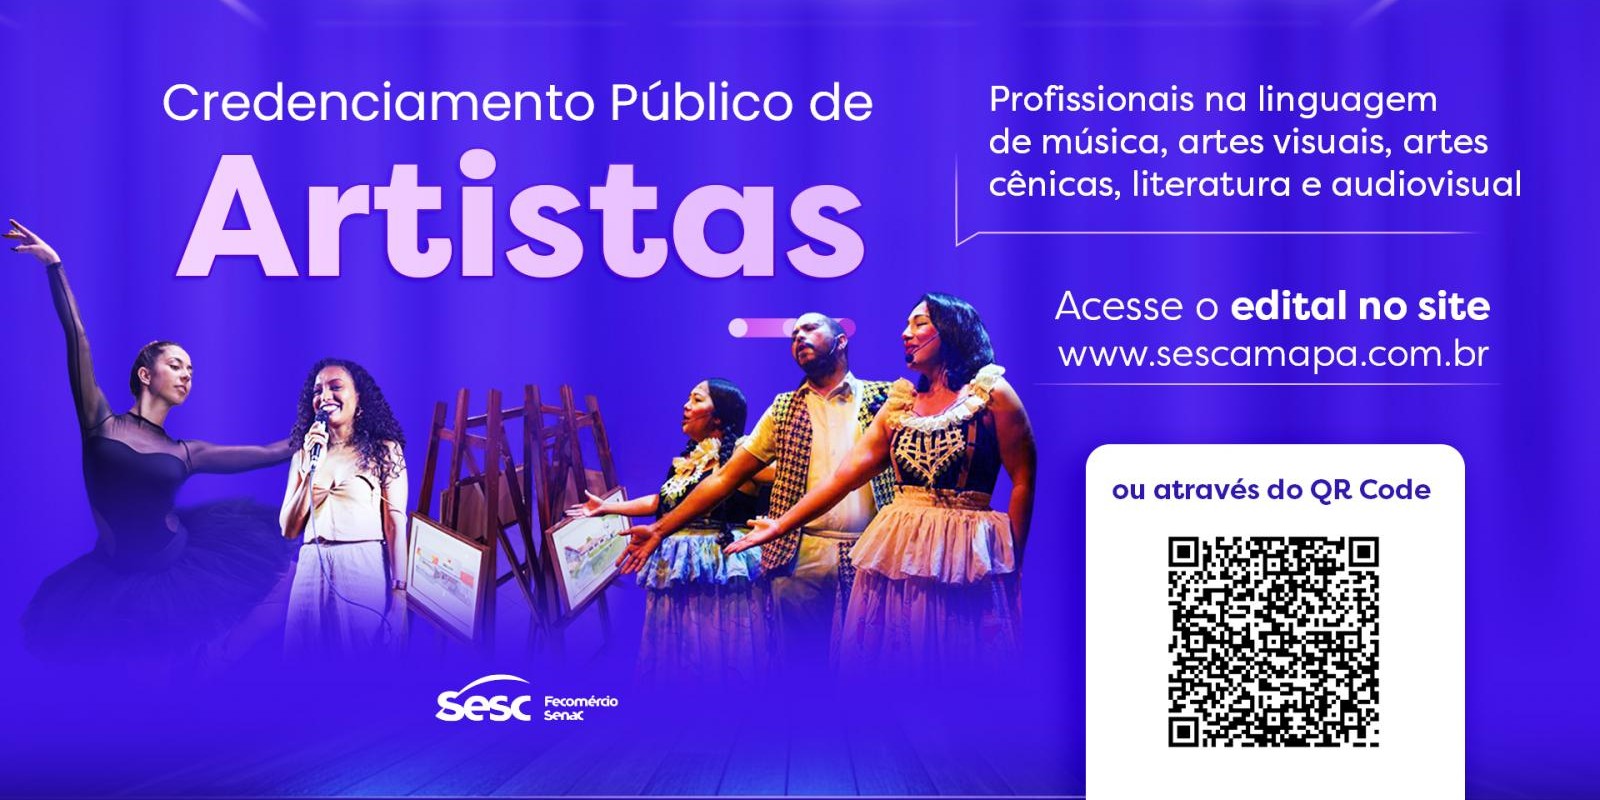 Credenciamento de artistas: Sesc Amapá chama profissionais a apresentarem propostas para programação cultural